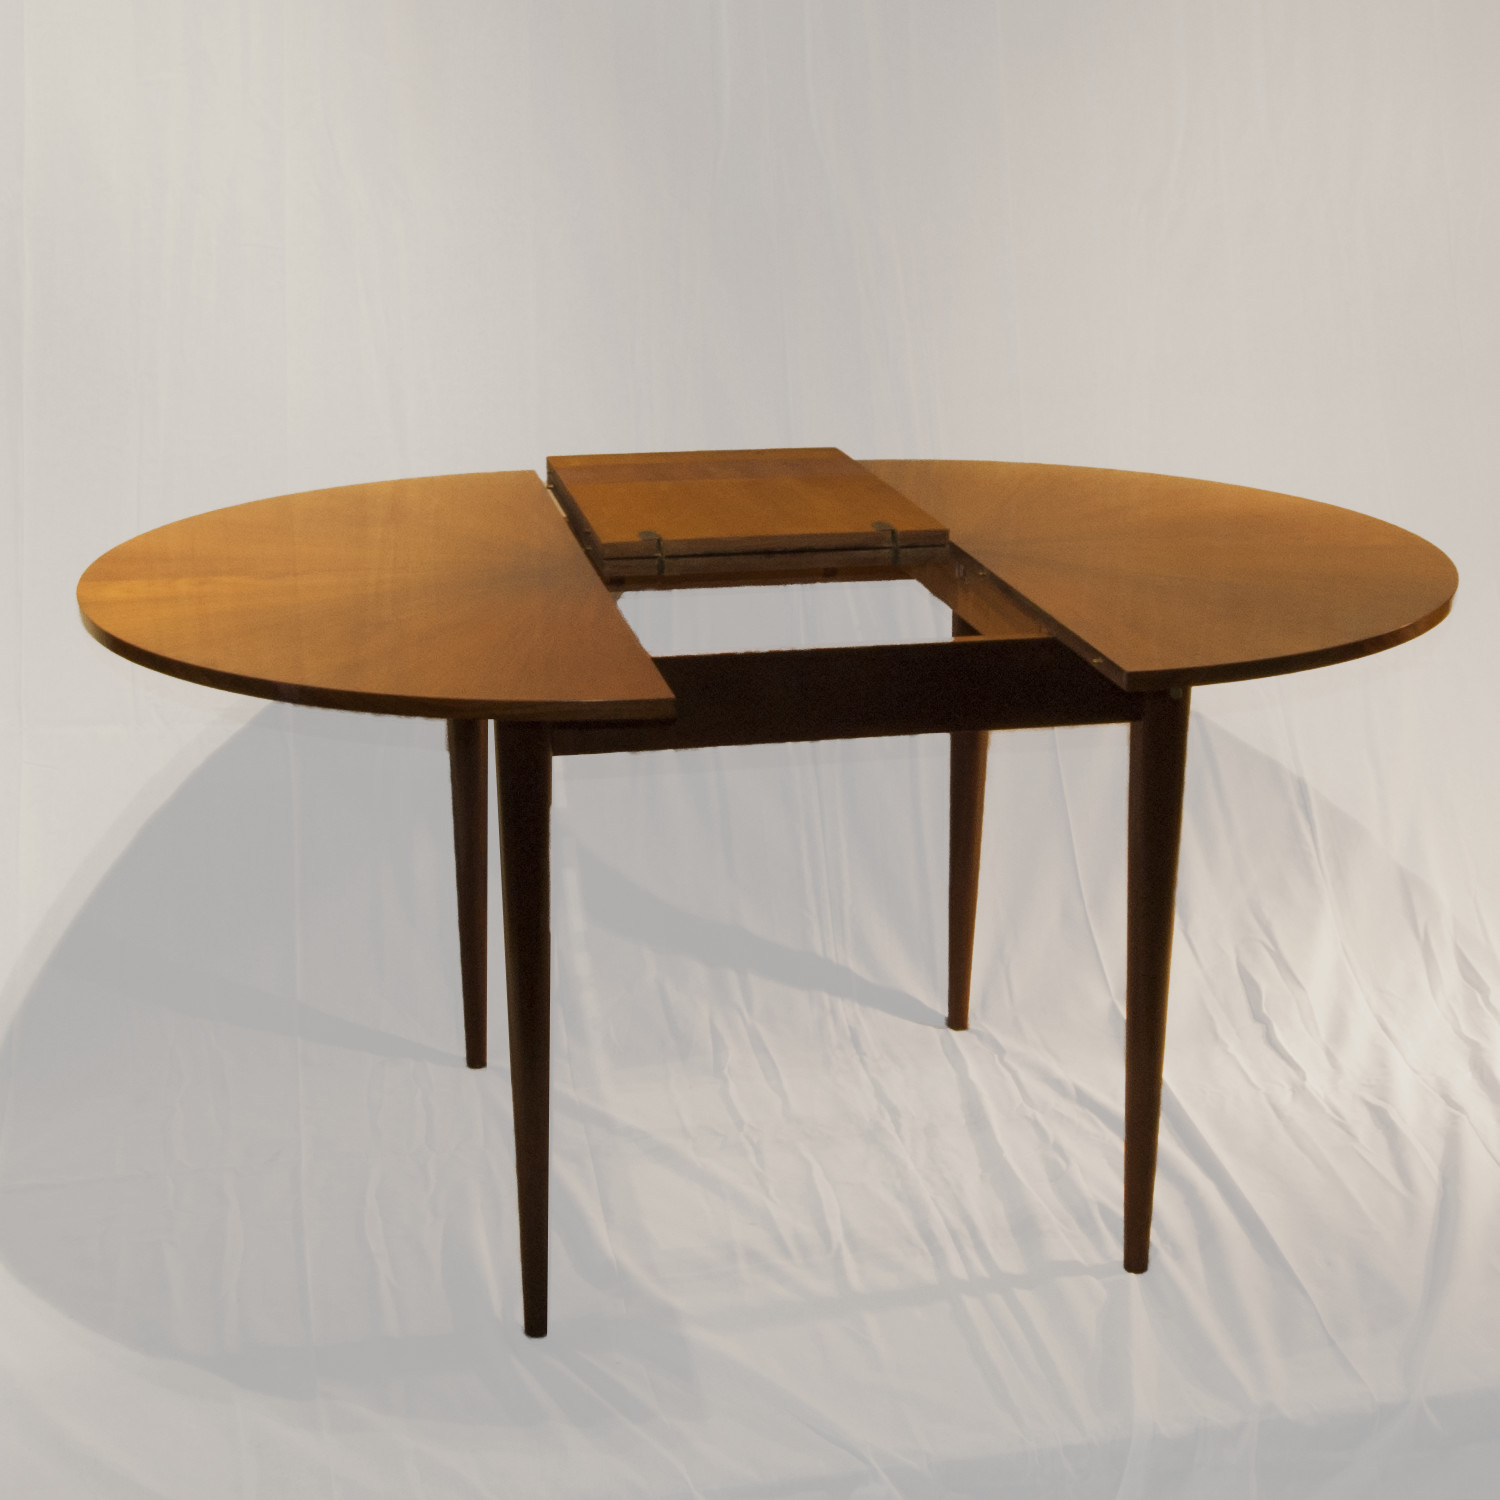 Danish Design round table